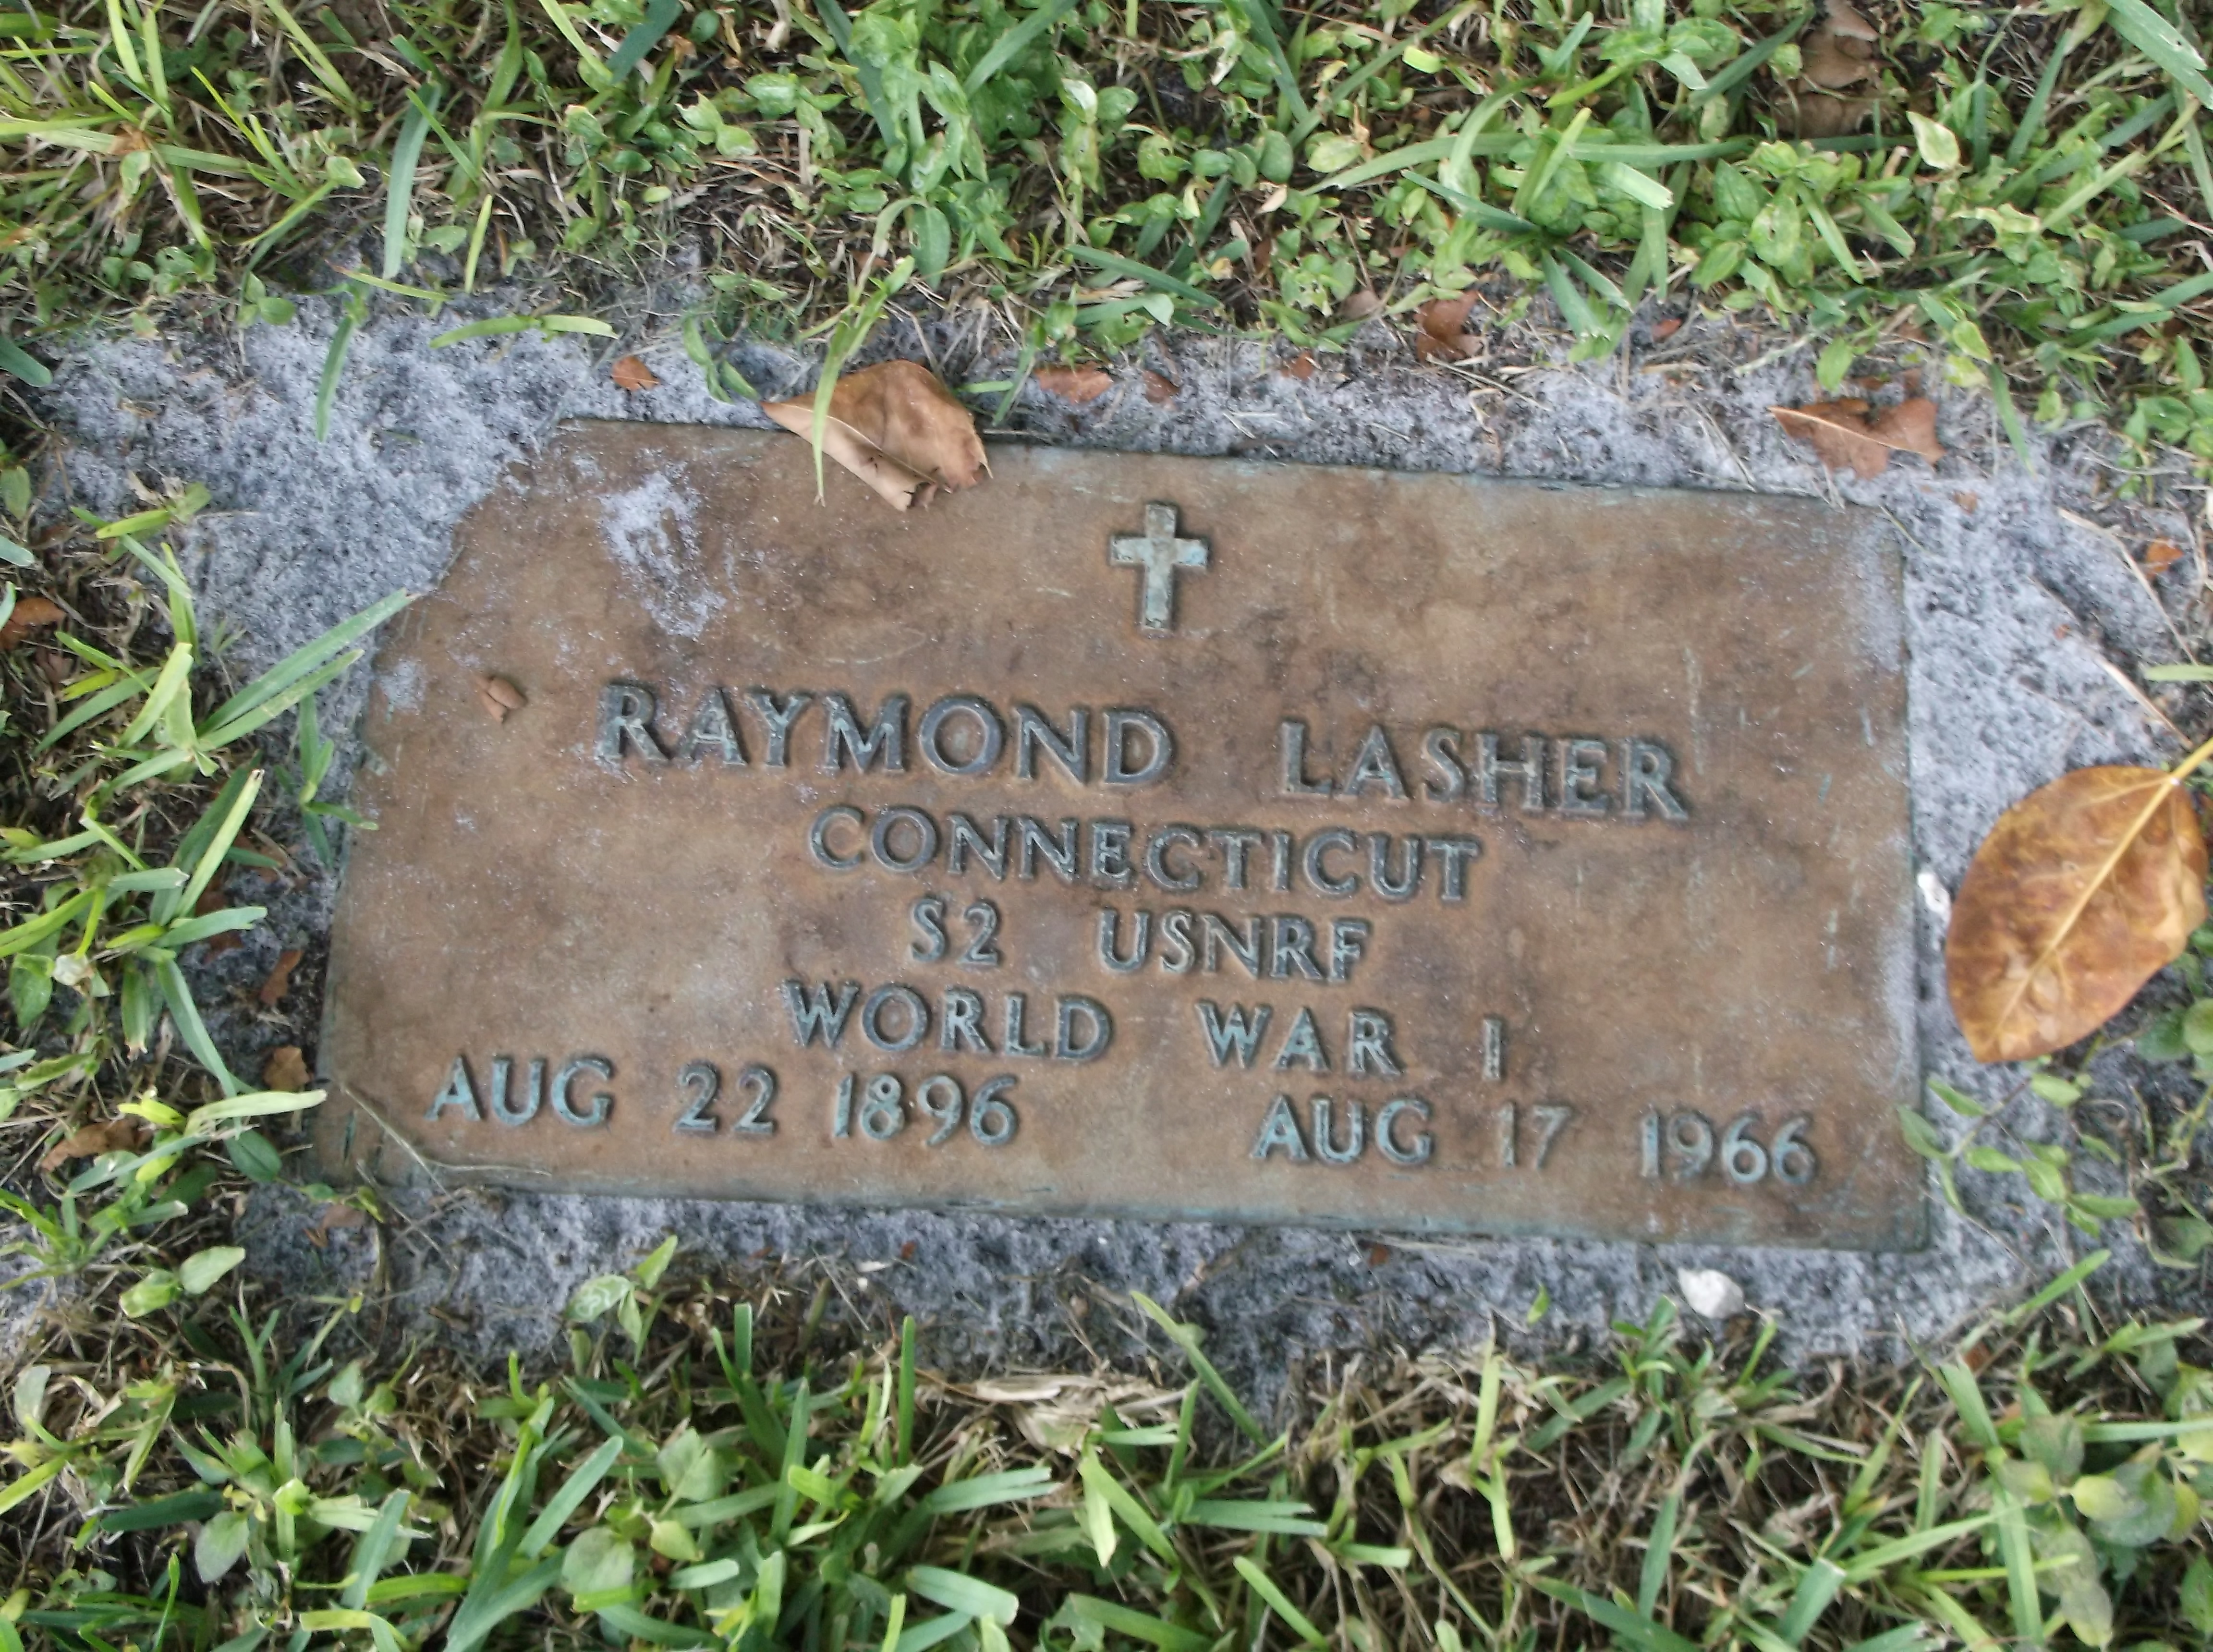 Raymond Lasher